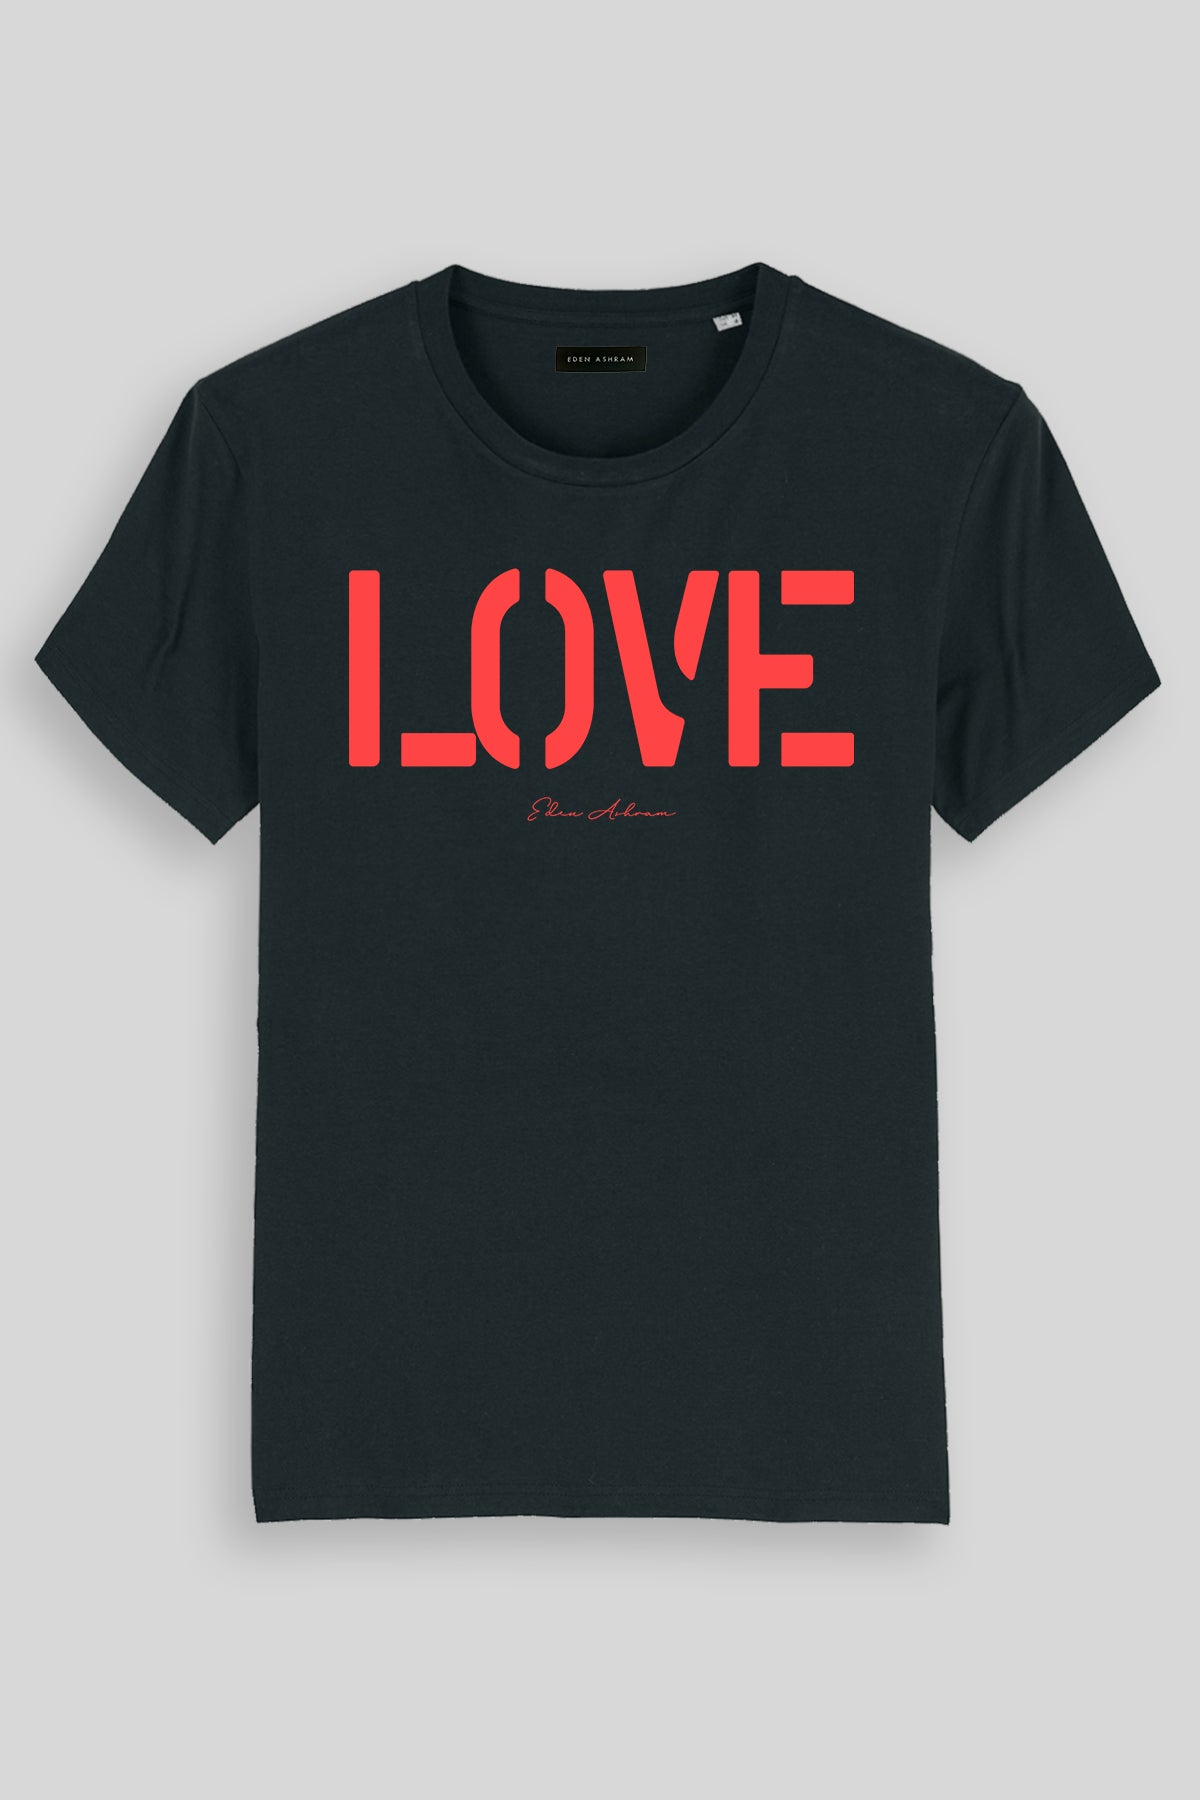 EDEN ASHRAM LOVE Premium Classic T-Shirt Black